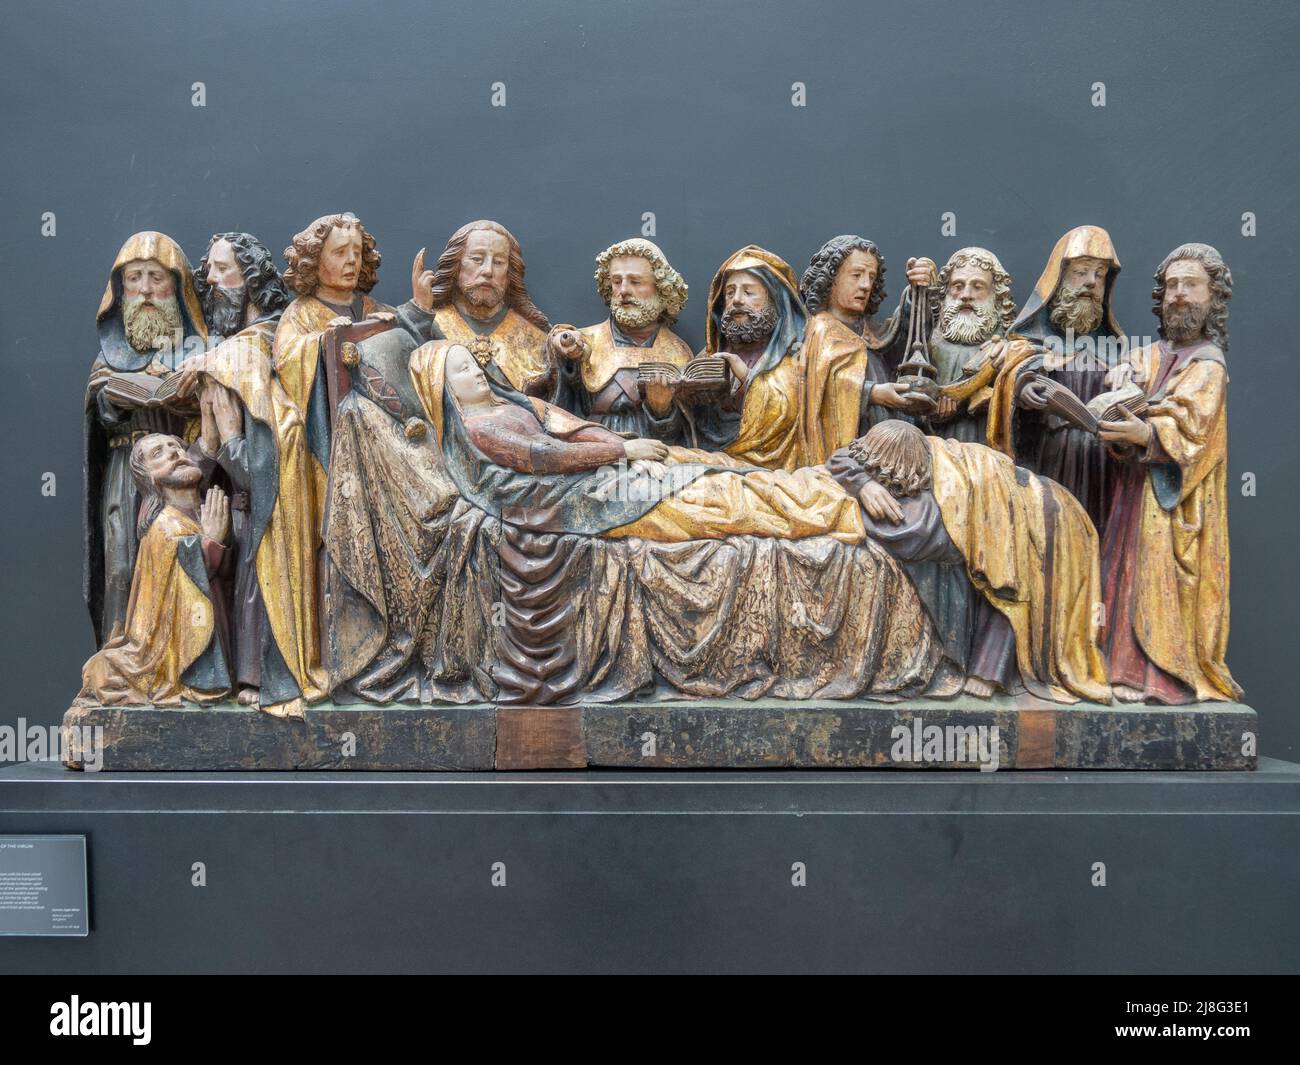 Der Tod der Jungfrau, ein Kunstwerk aus bemaltem und vergoldetem Nussbaum aus dem 15.. Jahrhundert, das im V&A Museum, London, ausgestellt wird Stockfoto